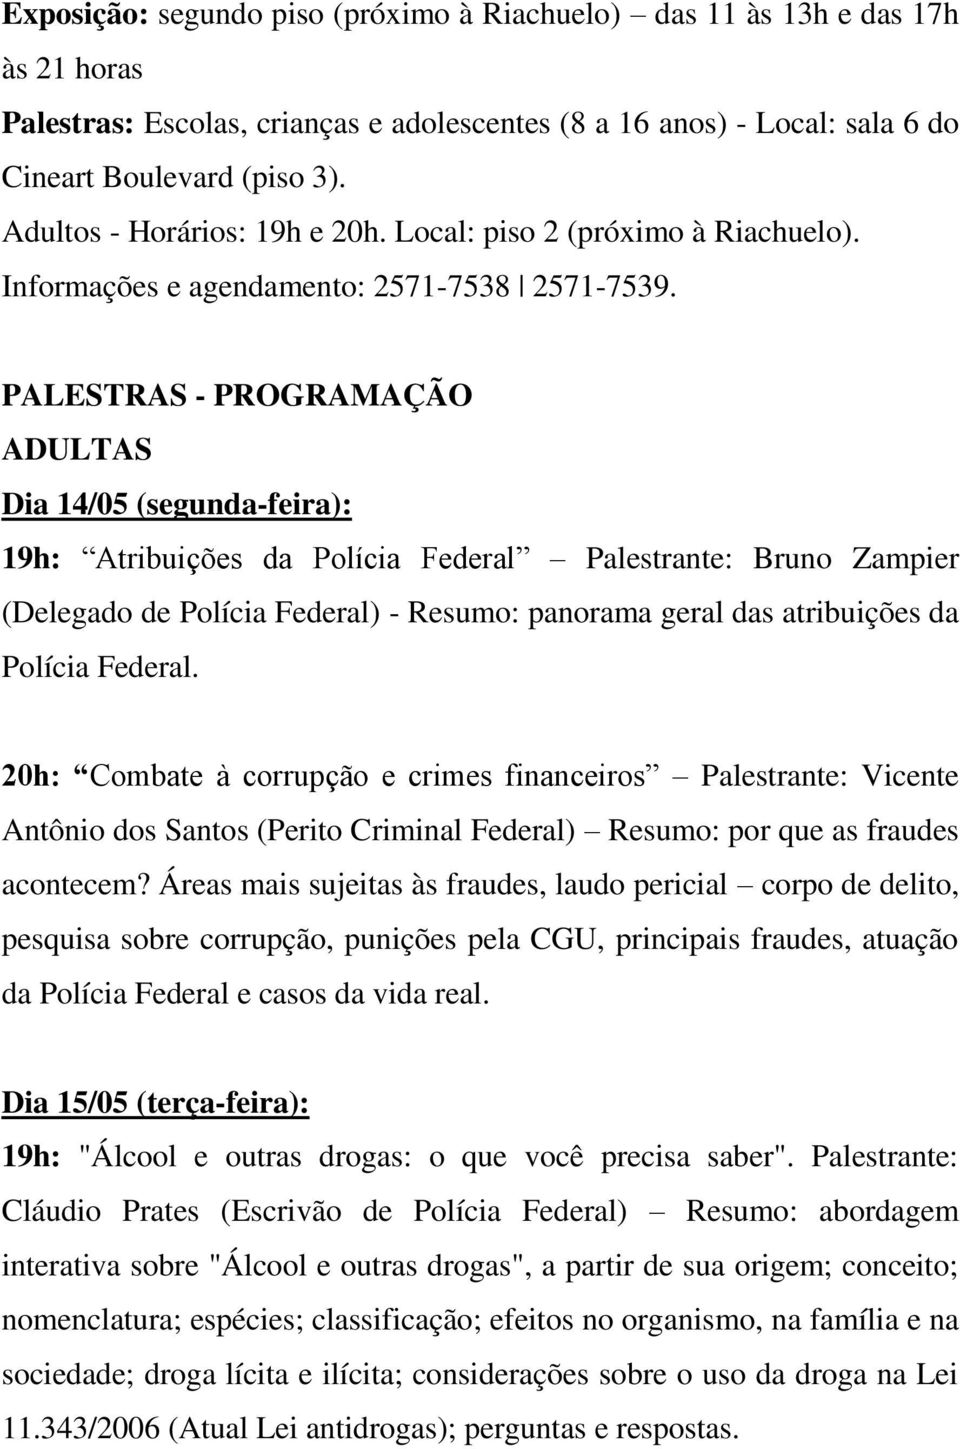 PALESTRAS - PROGRAMAÇÃO ADULTAS Dia 14/05 (segunda-feira): 19h: Atribuições da Polícia Federal Palestrante: Bruno Zampier (Delegado de Polícia Federal) - Resumo: panorama geral das atribuições da